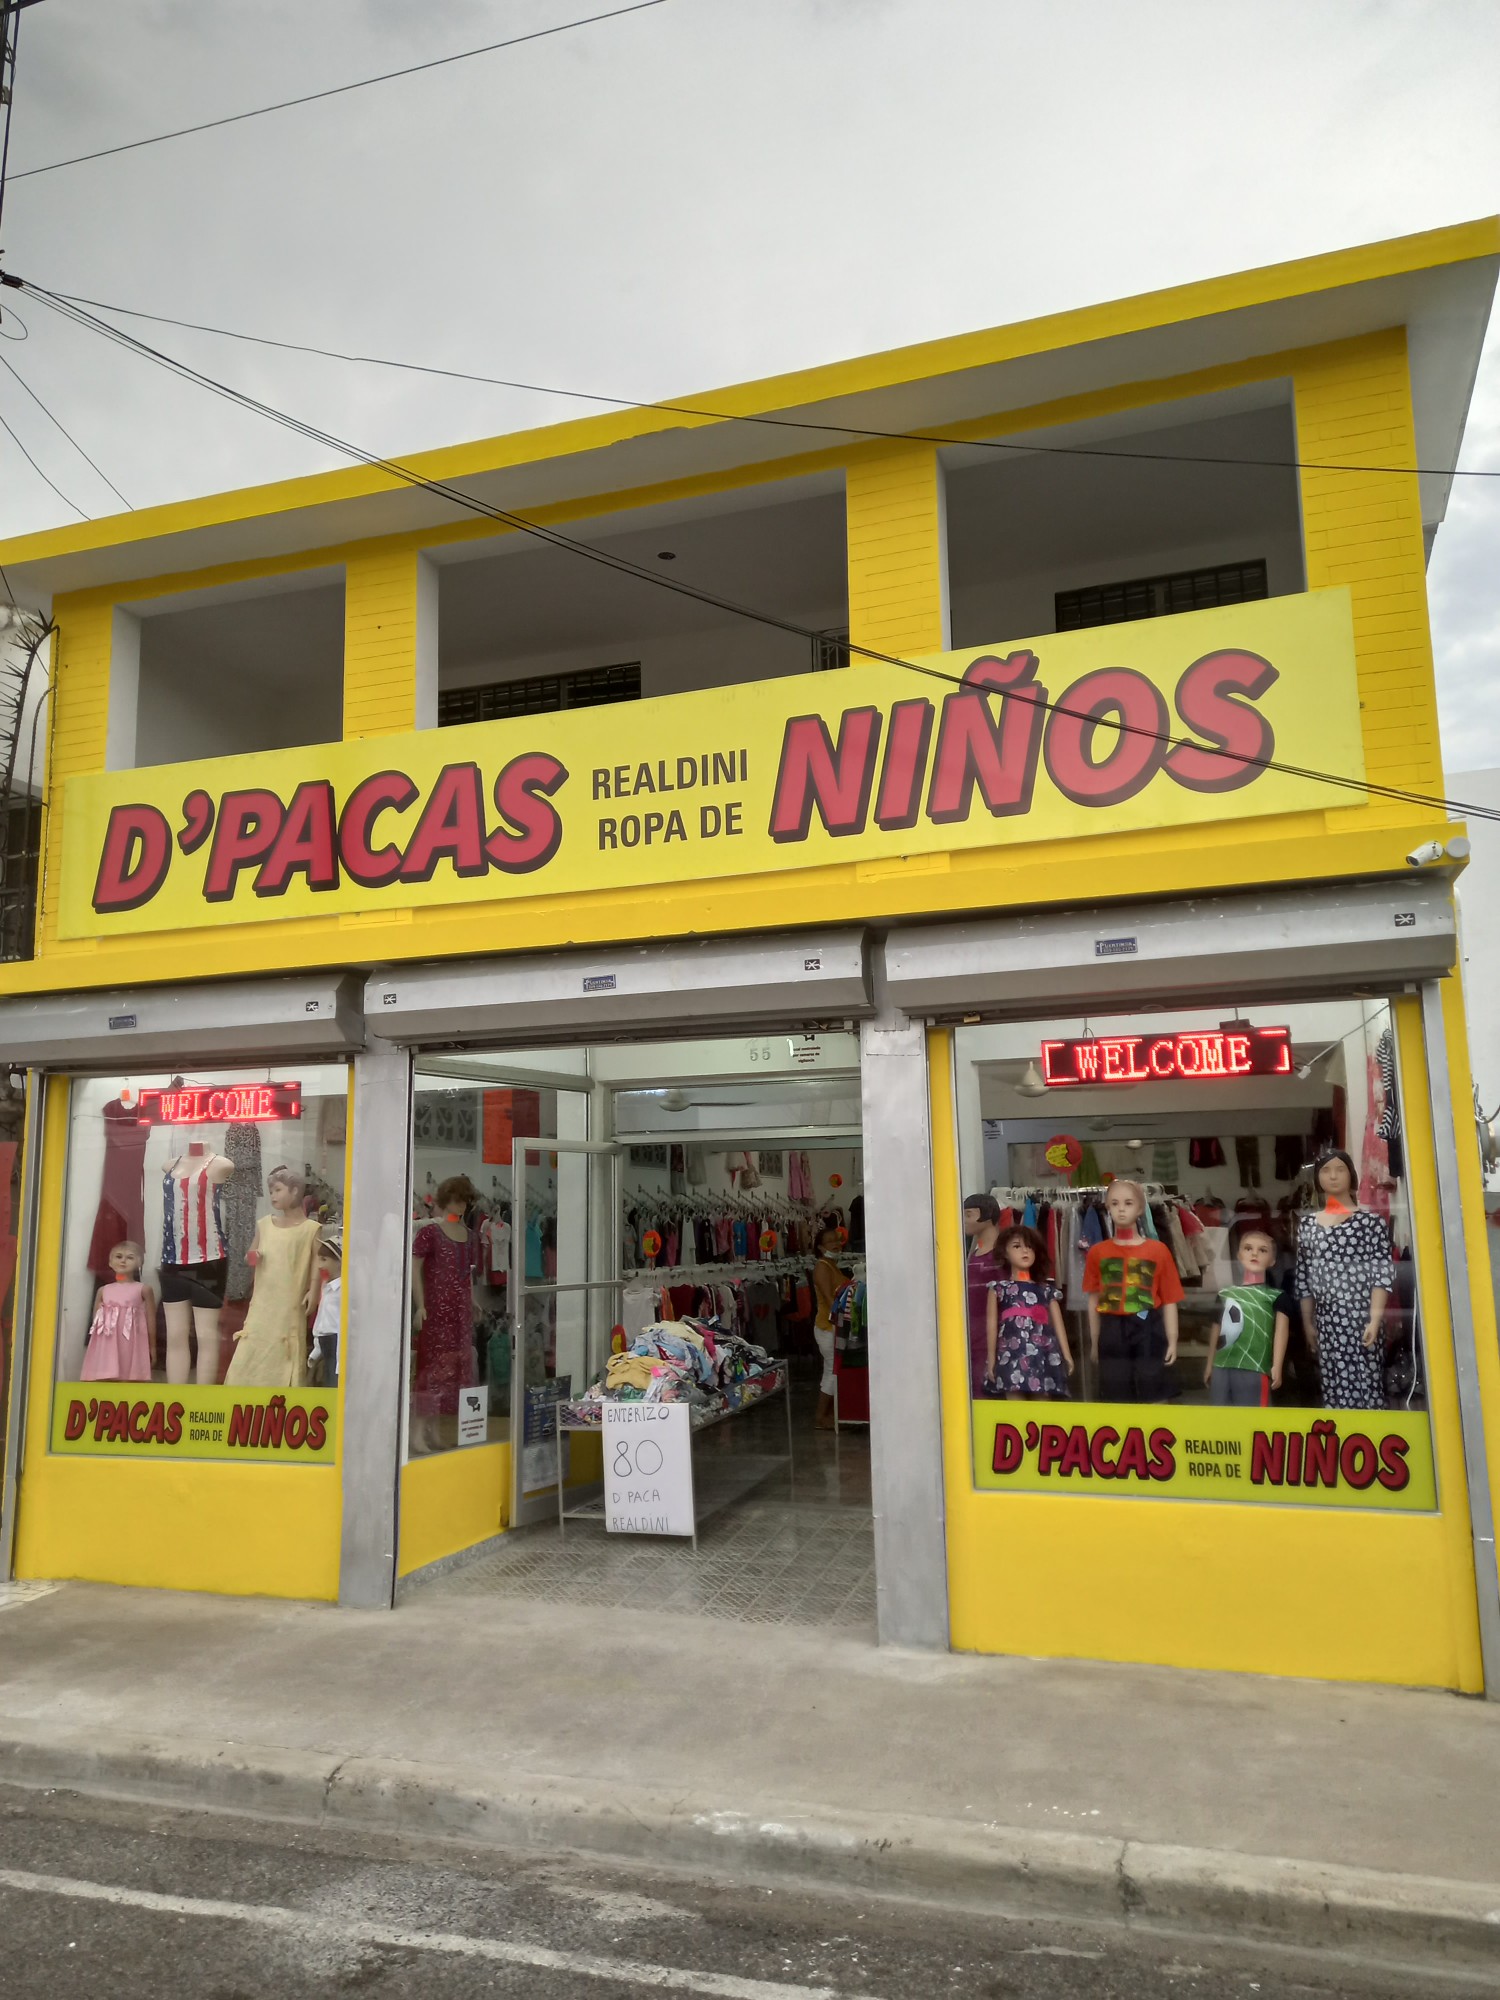 ropa y zapatos - D'PACAS REALDINI, ropa de niños. Nuevo calle separación 55 Puerto Plata.